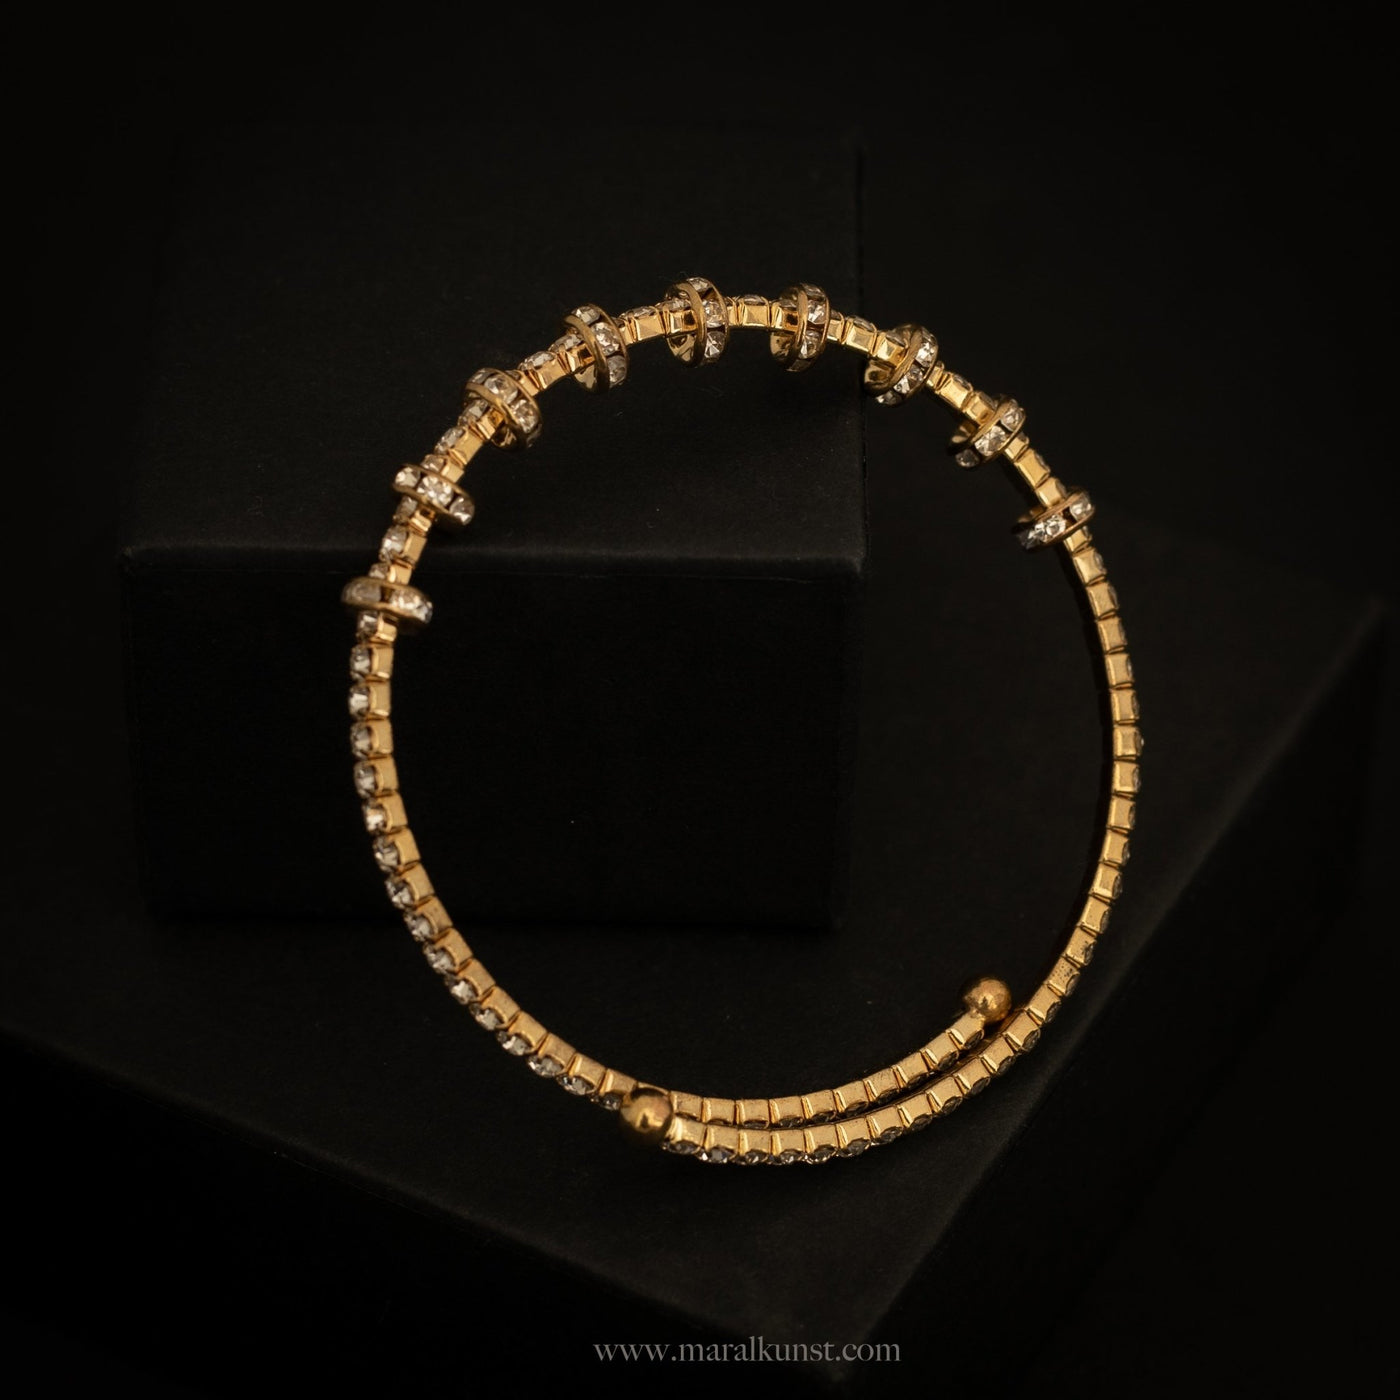 Norway CZ Cuff Bracelet - Maral Kunst Jewelry